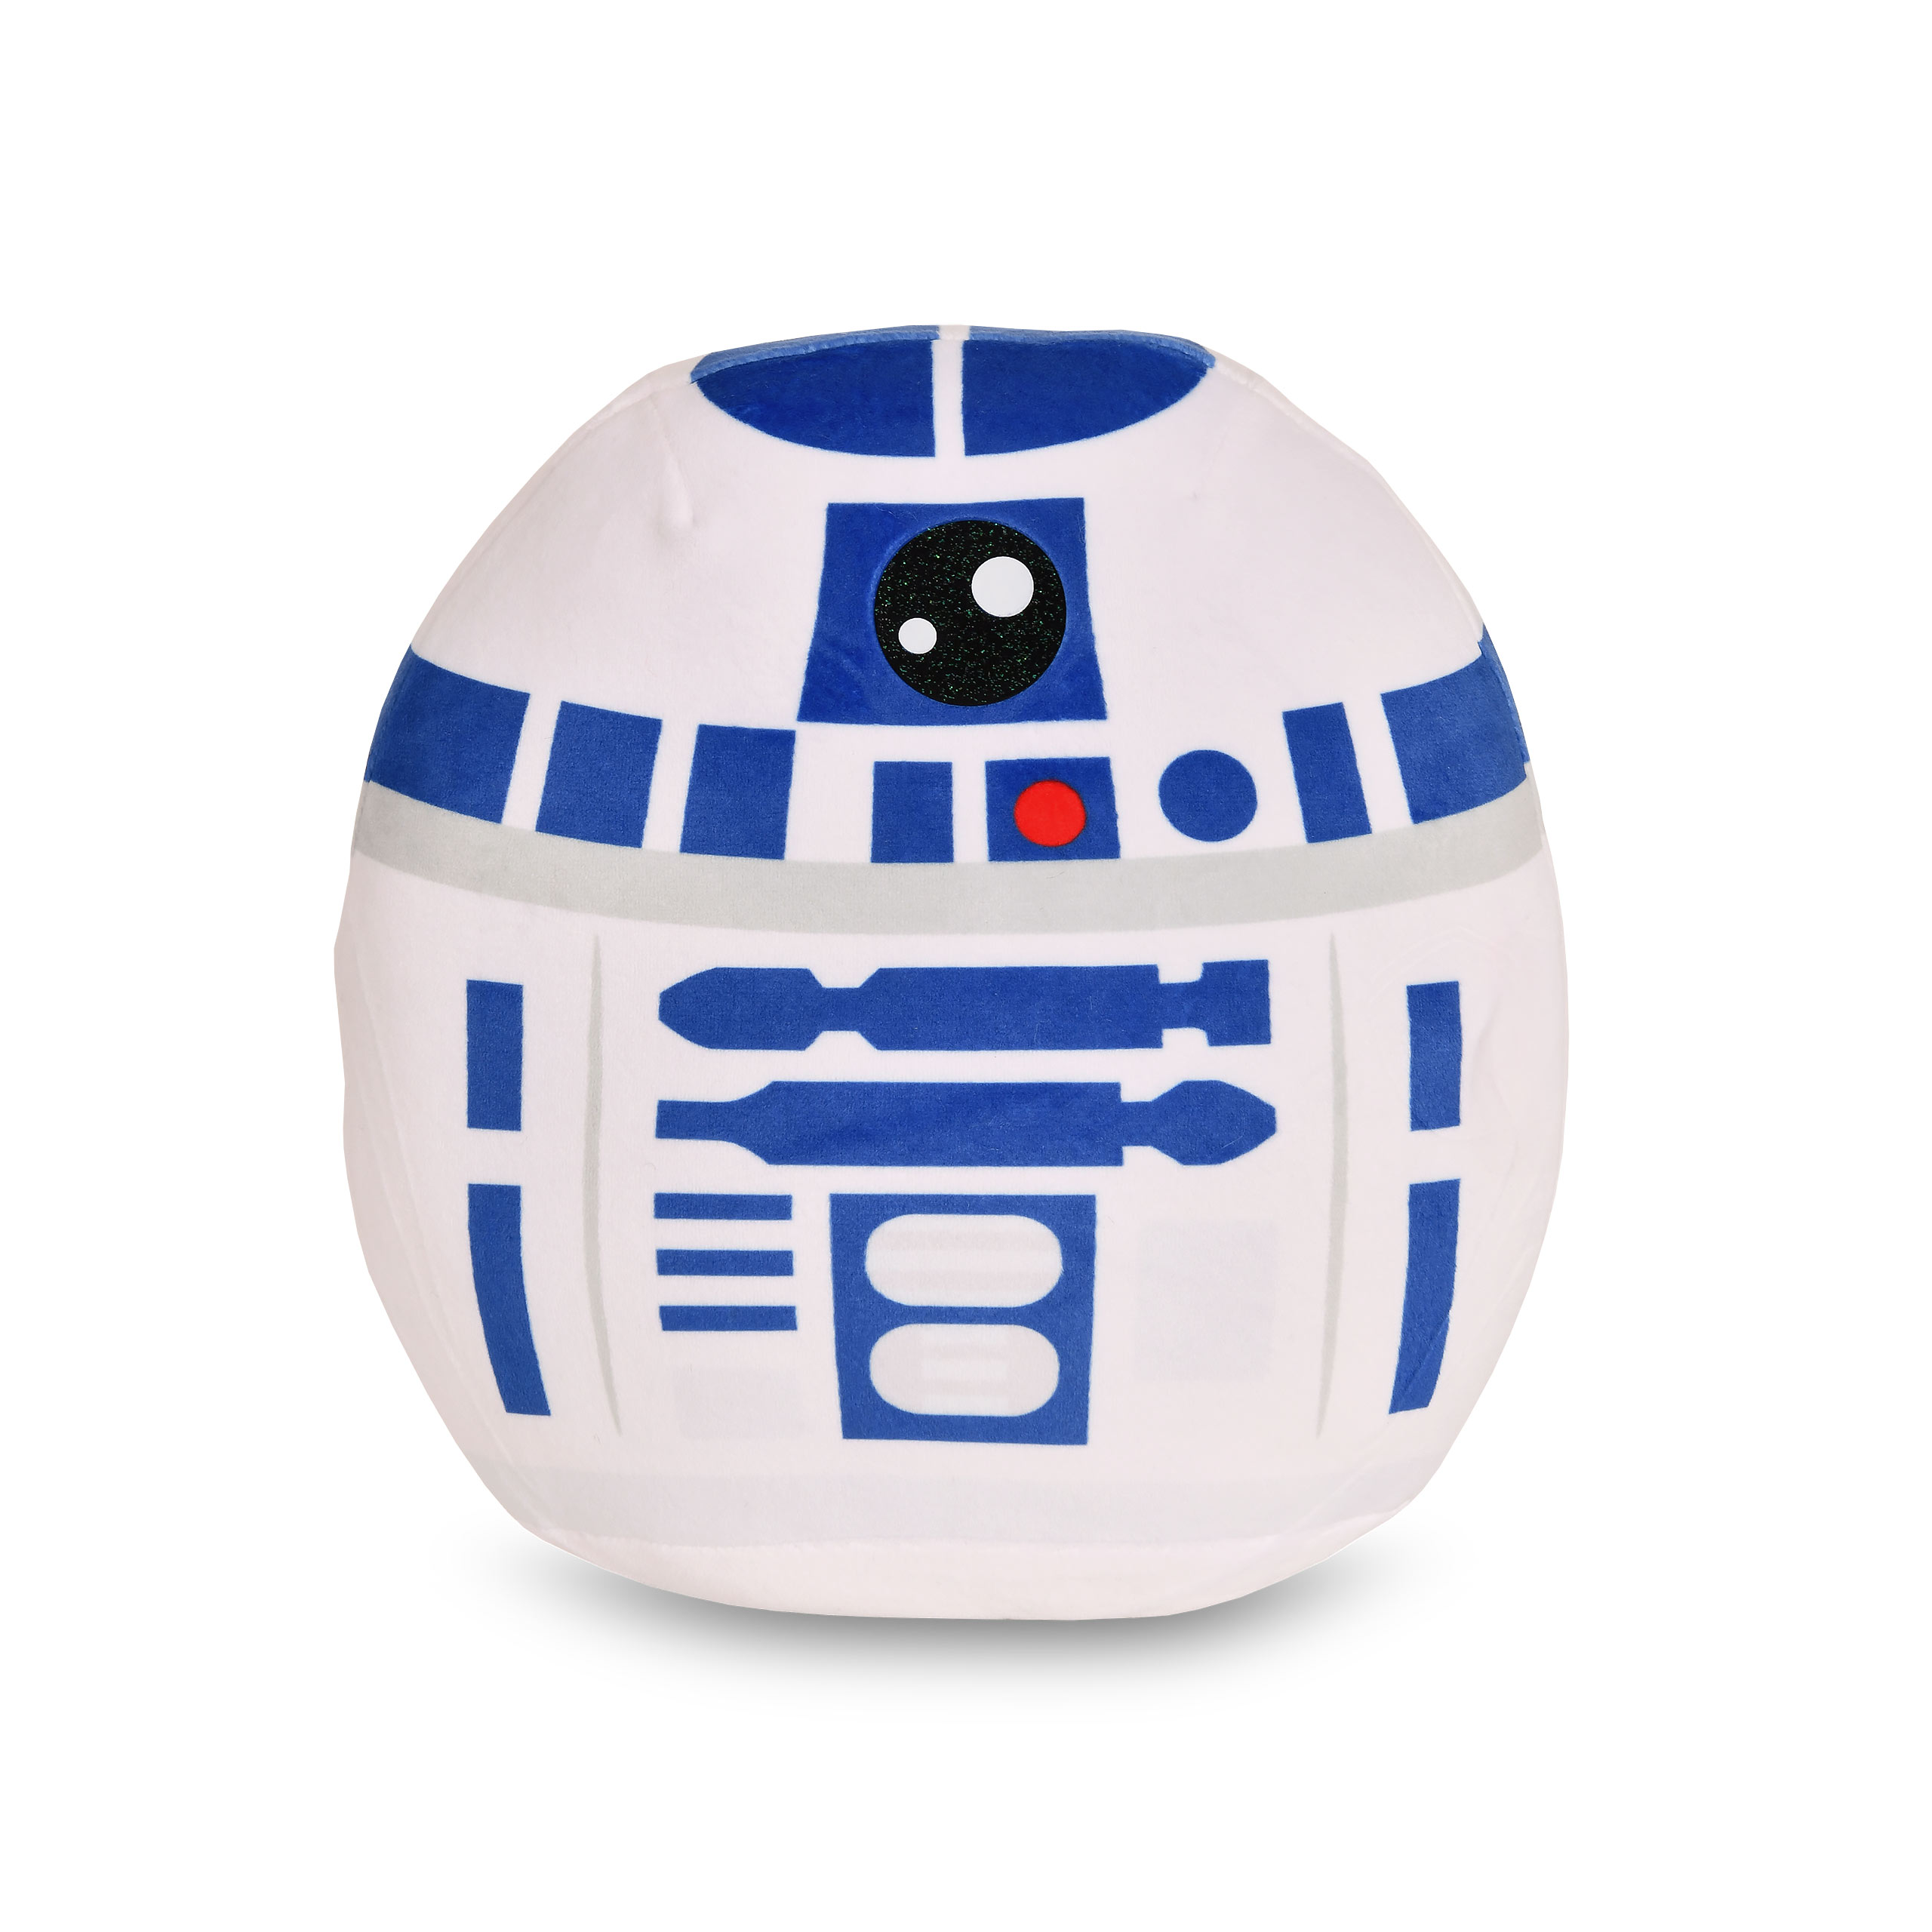 Star Wars - R2-D2 Squishy Beanies Plush Cushion 23cm